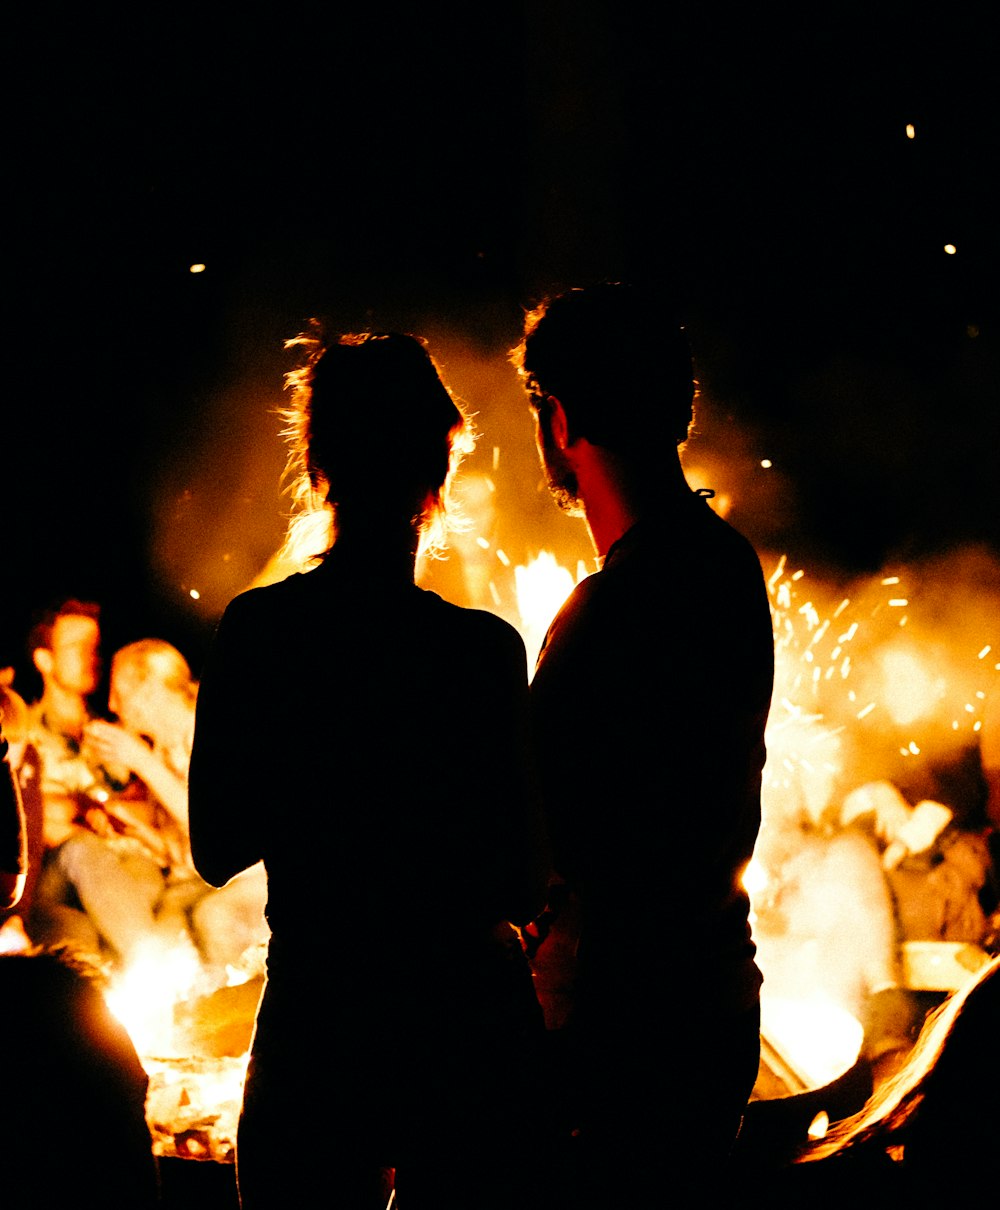 deux personnes debout devant un feu de joie